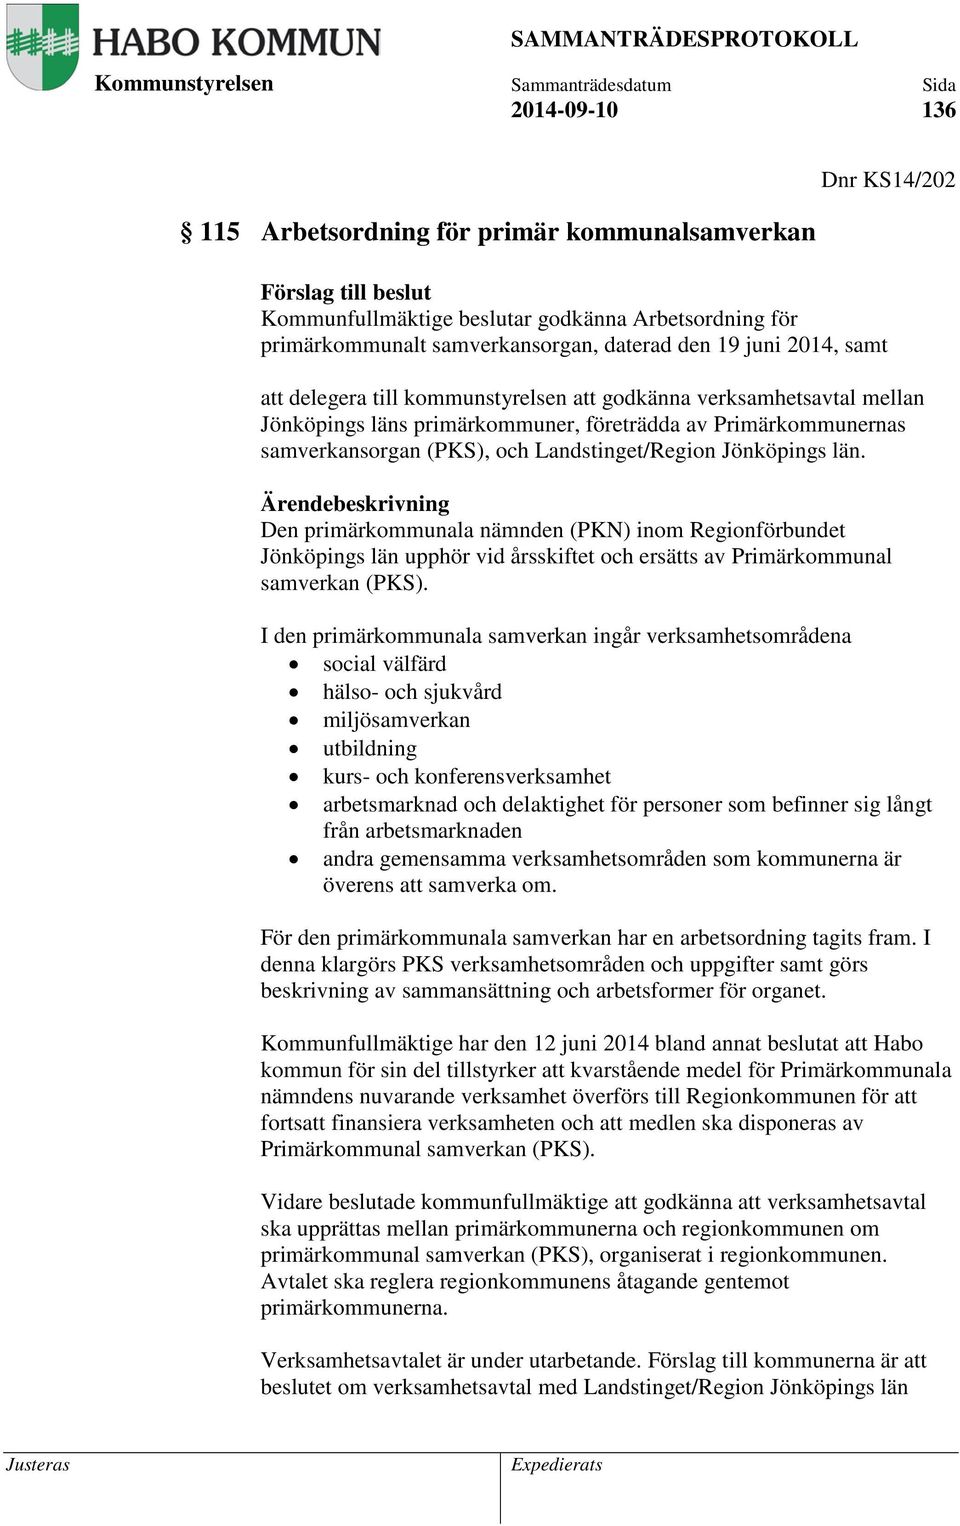 Jönköpings län. Den primärkommunala nämnden (PKN) inom Regionförbundet Jönköpings län upphör vid årsskiftet och ersätts av Primärkommunal samverkan (PKS).